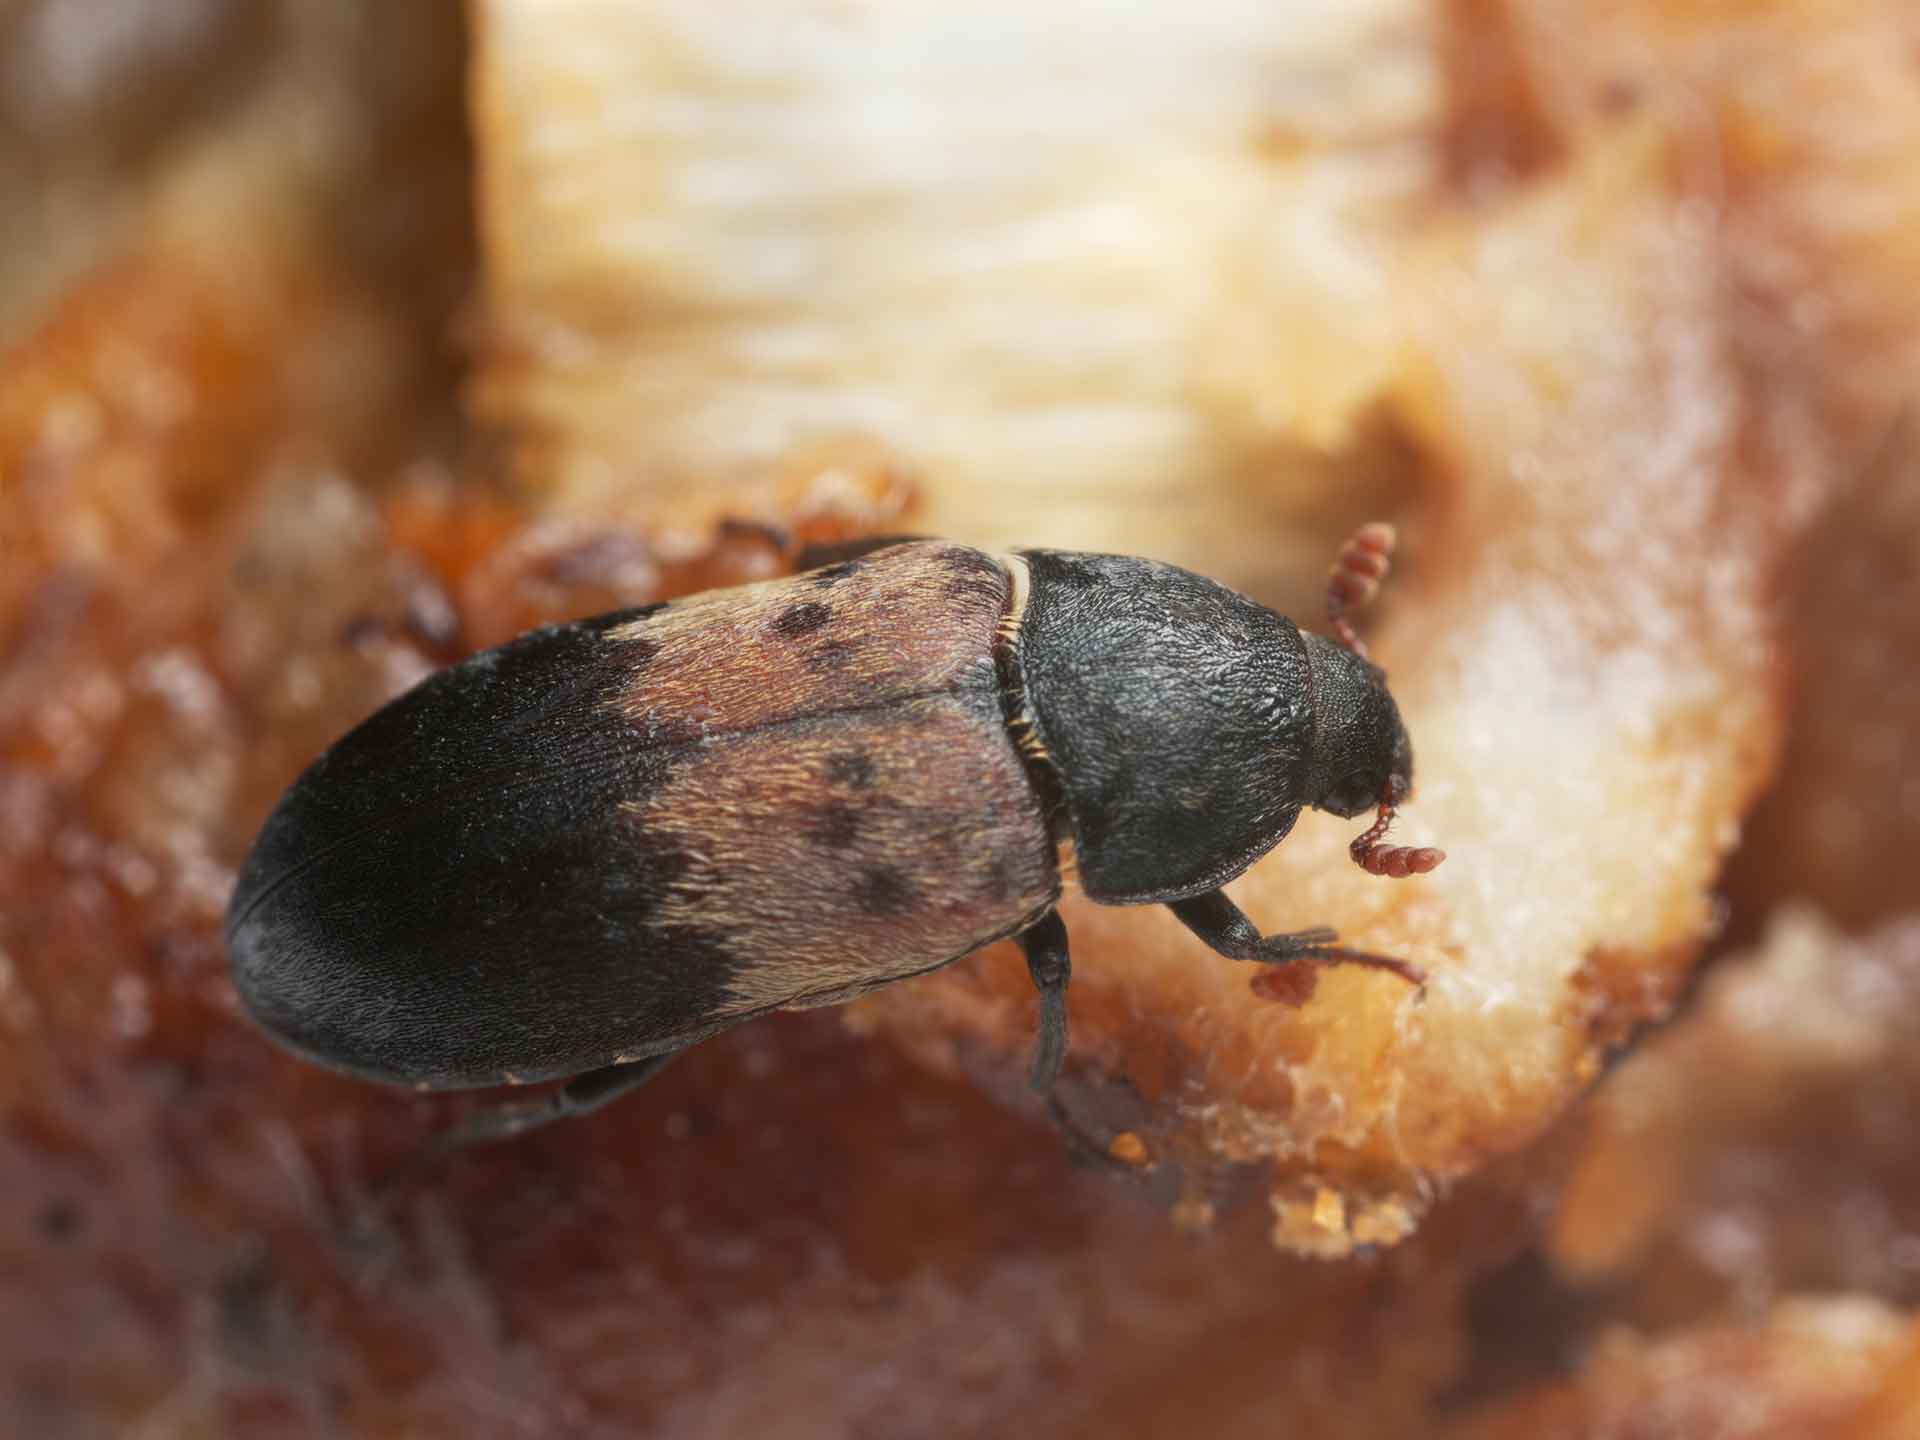 El escarabajo de la despensa, Dermestes ladarius, sobre carne, este escarabajo puede ser una plaga en productos animales, entomología forense